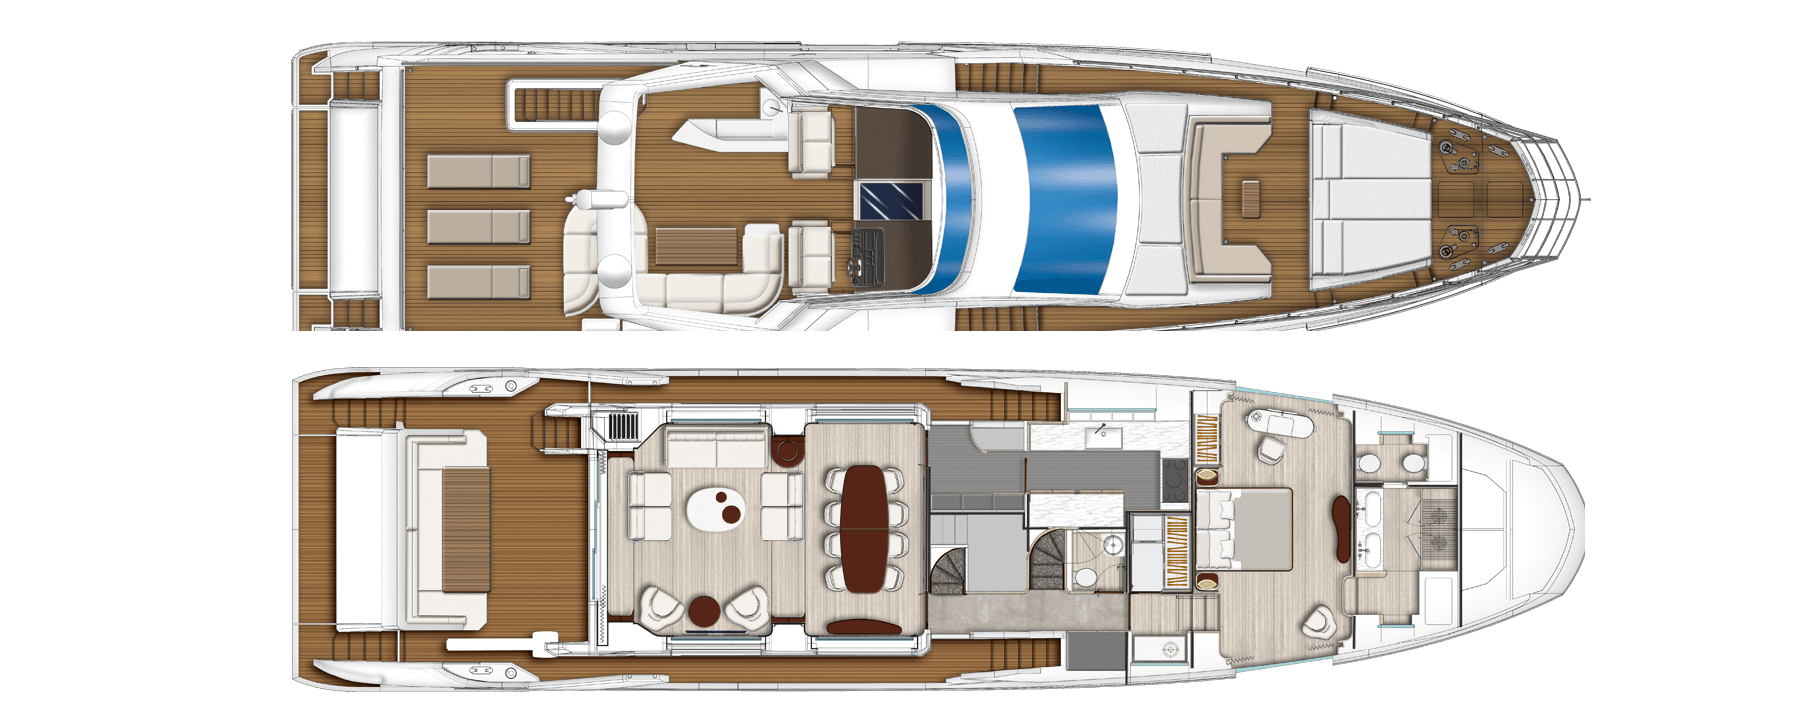 dawo yacht charter layout